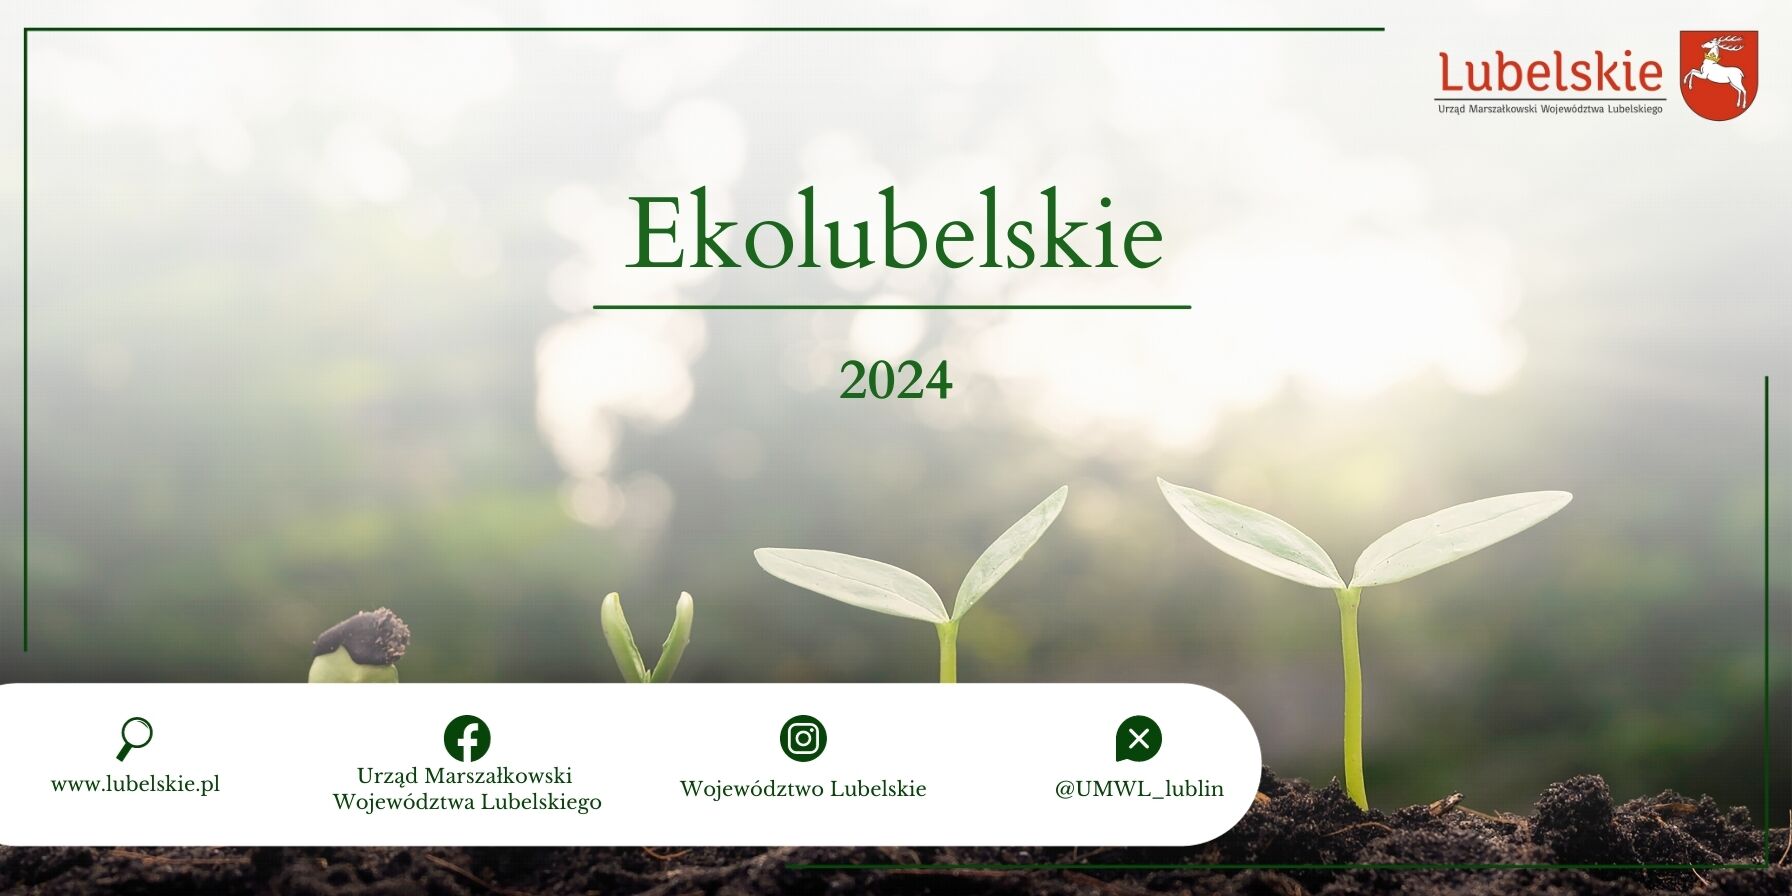 Baner promujący "Ekolubelskie 2024" z sylwetkami rosnących roślin i logo instytucji na tle rozmytego naturalnego krajobrazu.